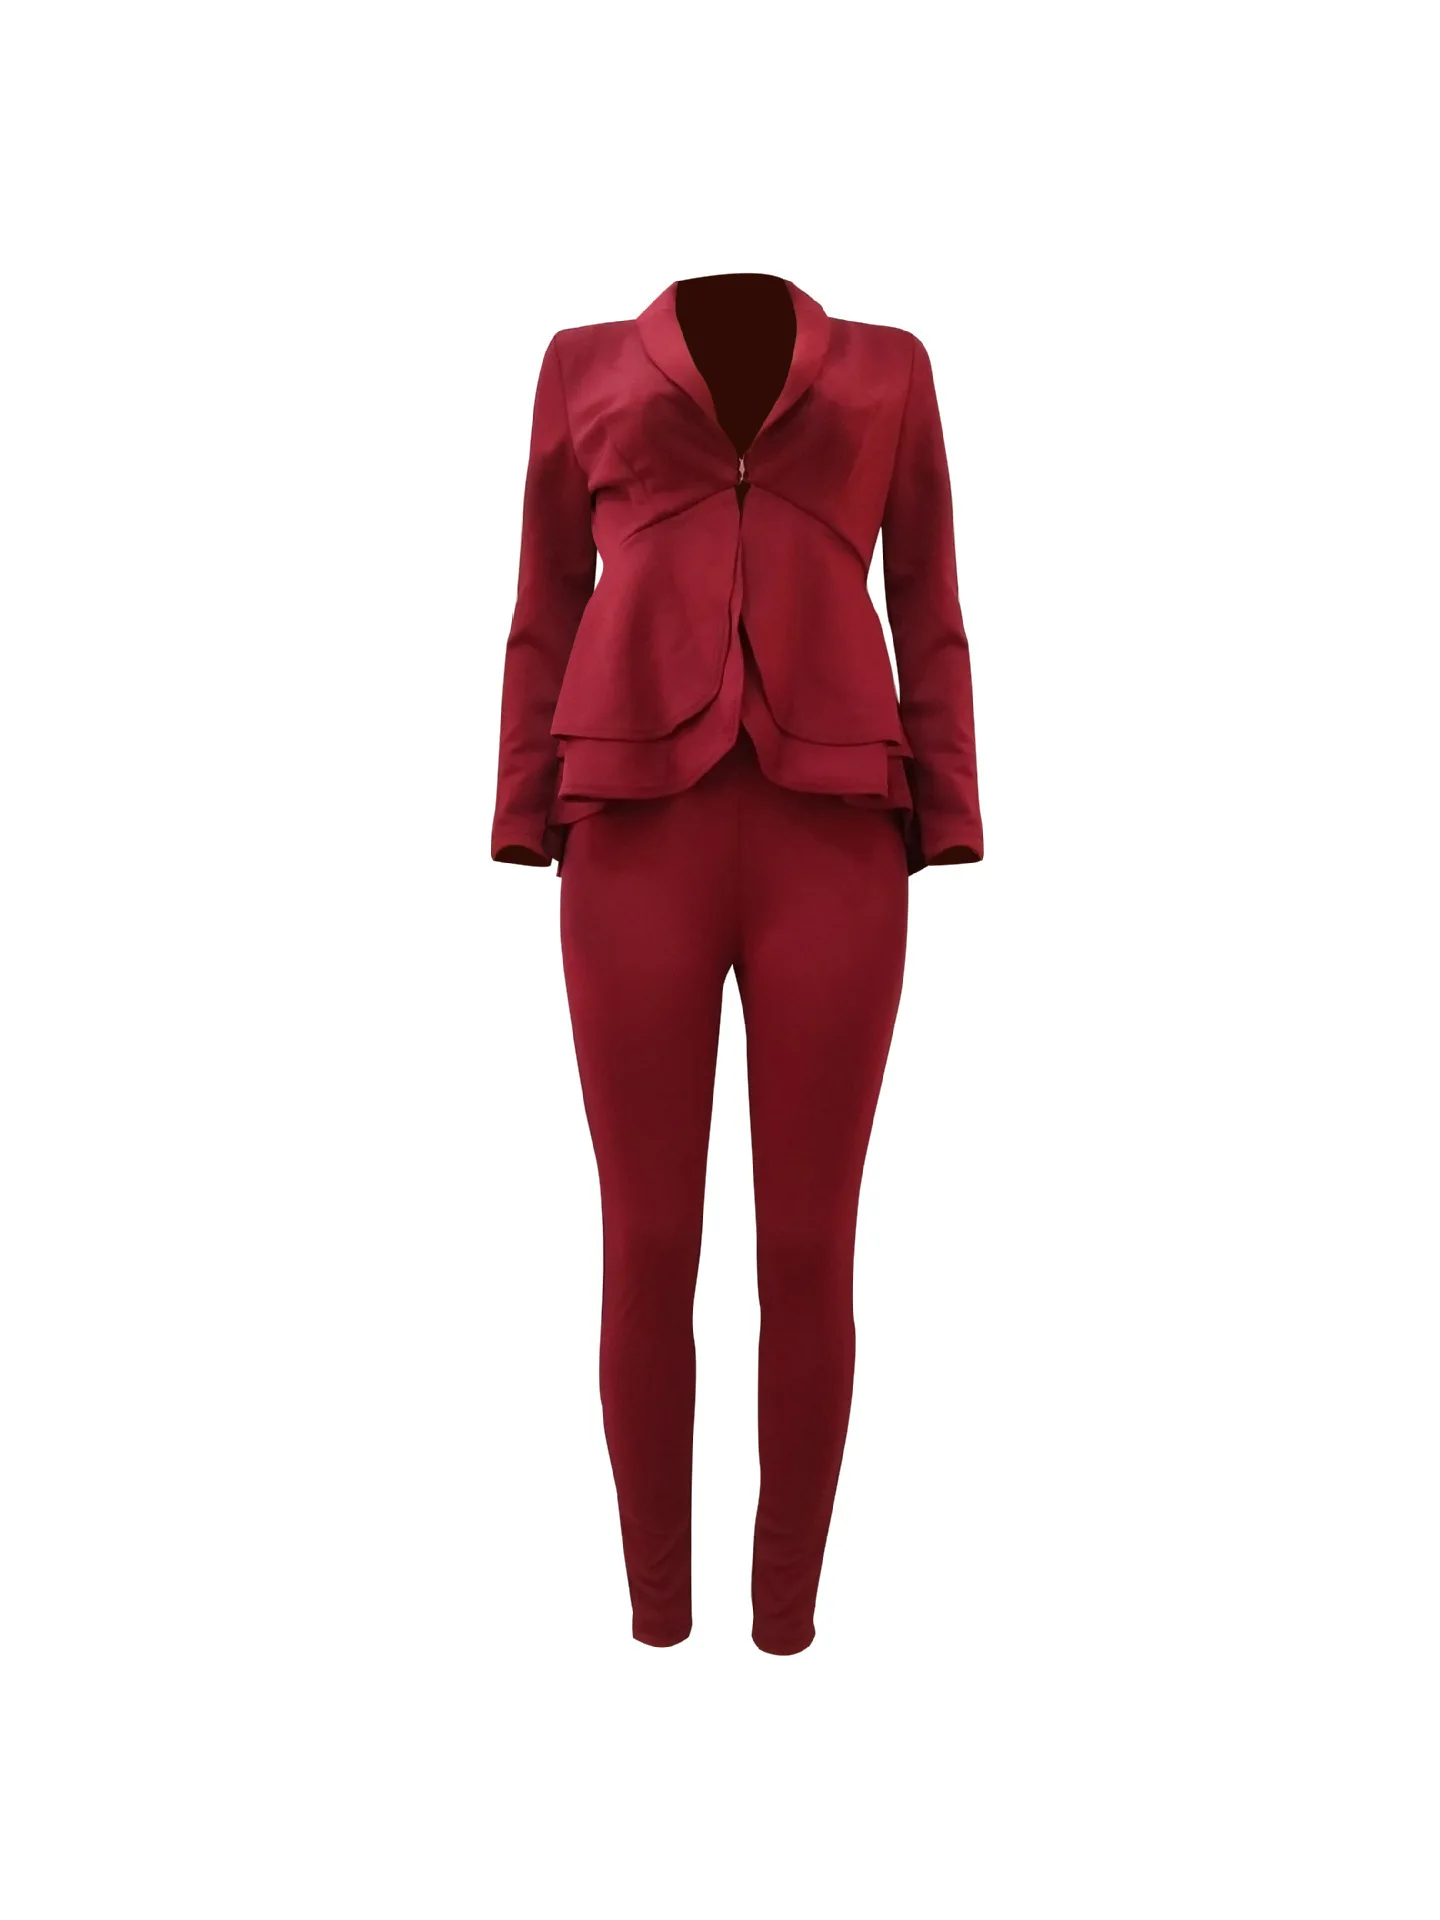 VITIANA, официальный комплект из 2 предметов для женщин, осень, женский пиджак с оборками и штаны, комплект из двух предметов, женский черный офисный комплект